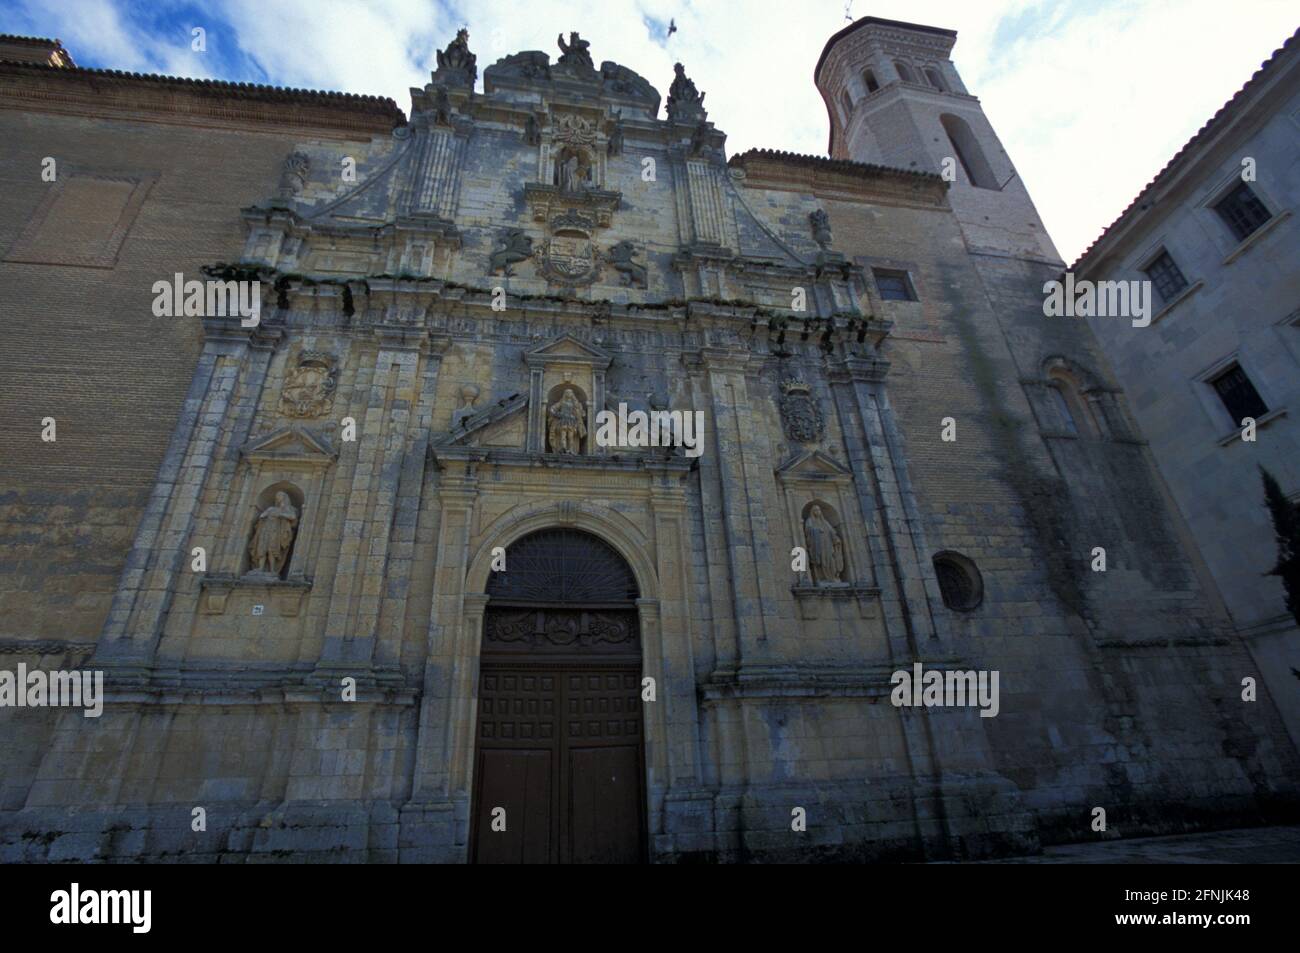 Facade of Real Monasterio de San Zoilo , Carrion de los Condes, Palencia province, Castilla y Leon, Spain Stock Photo